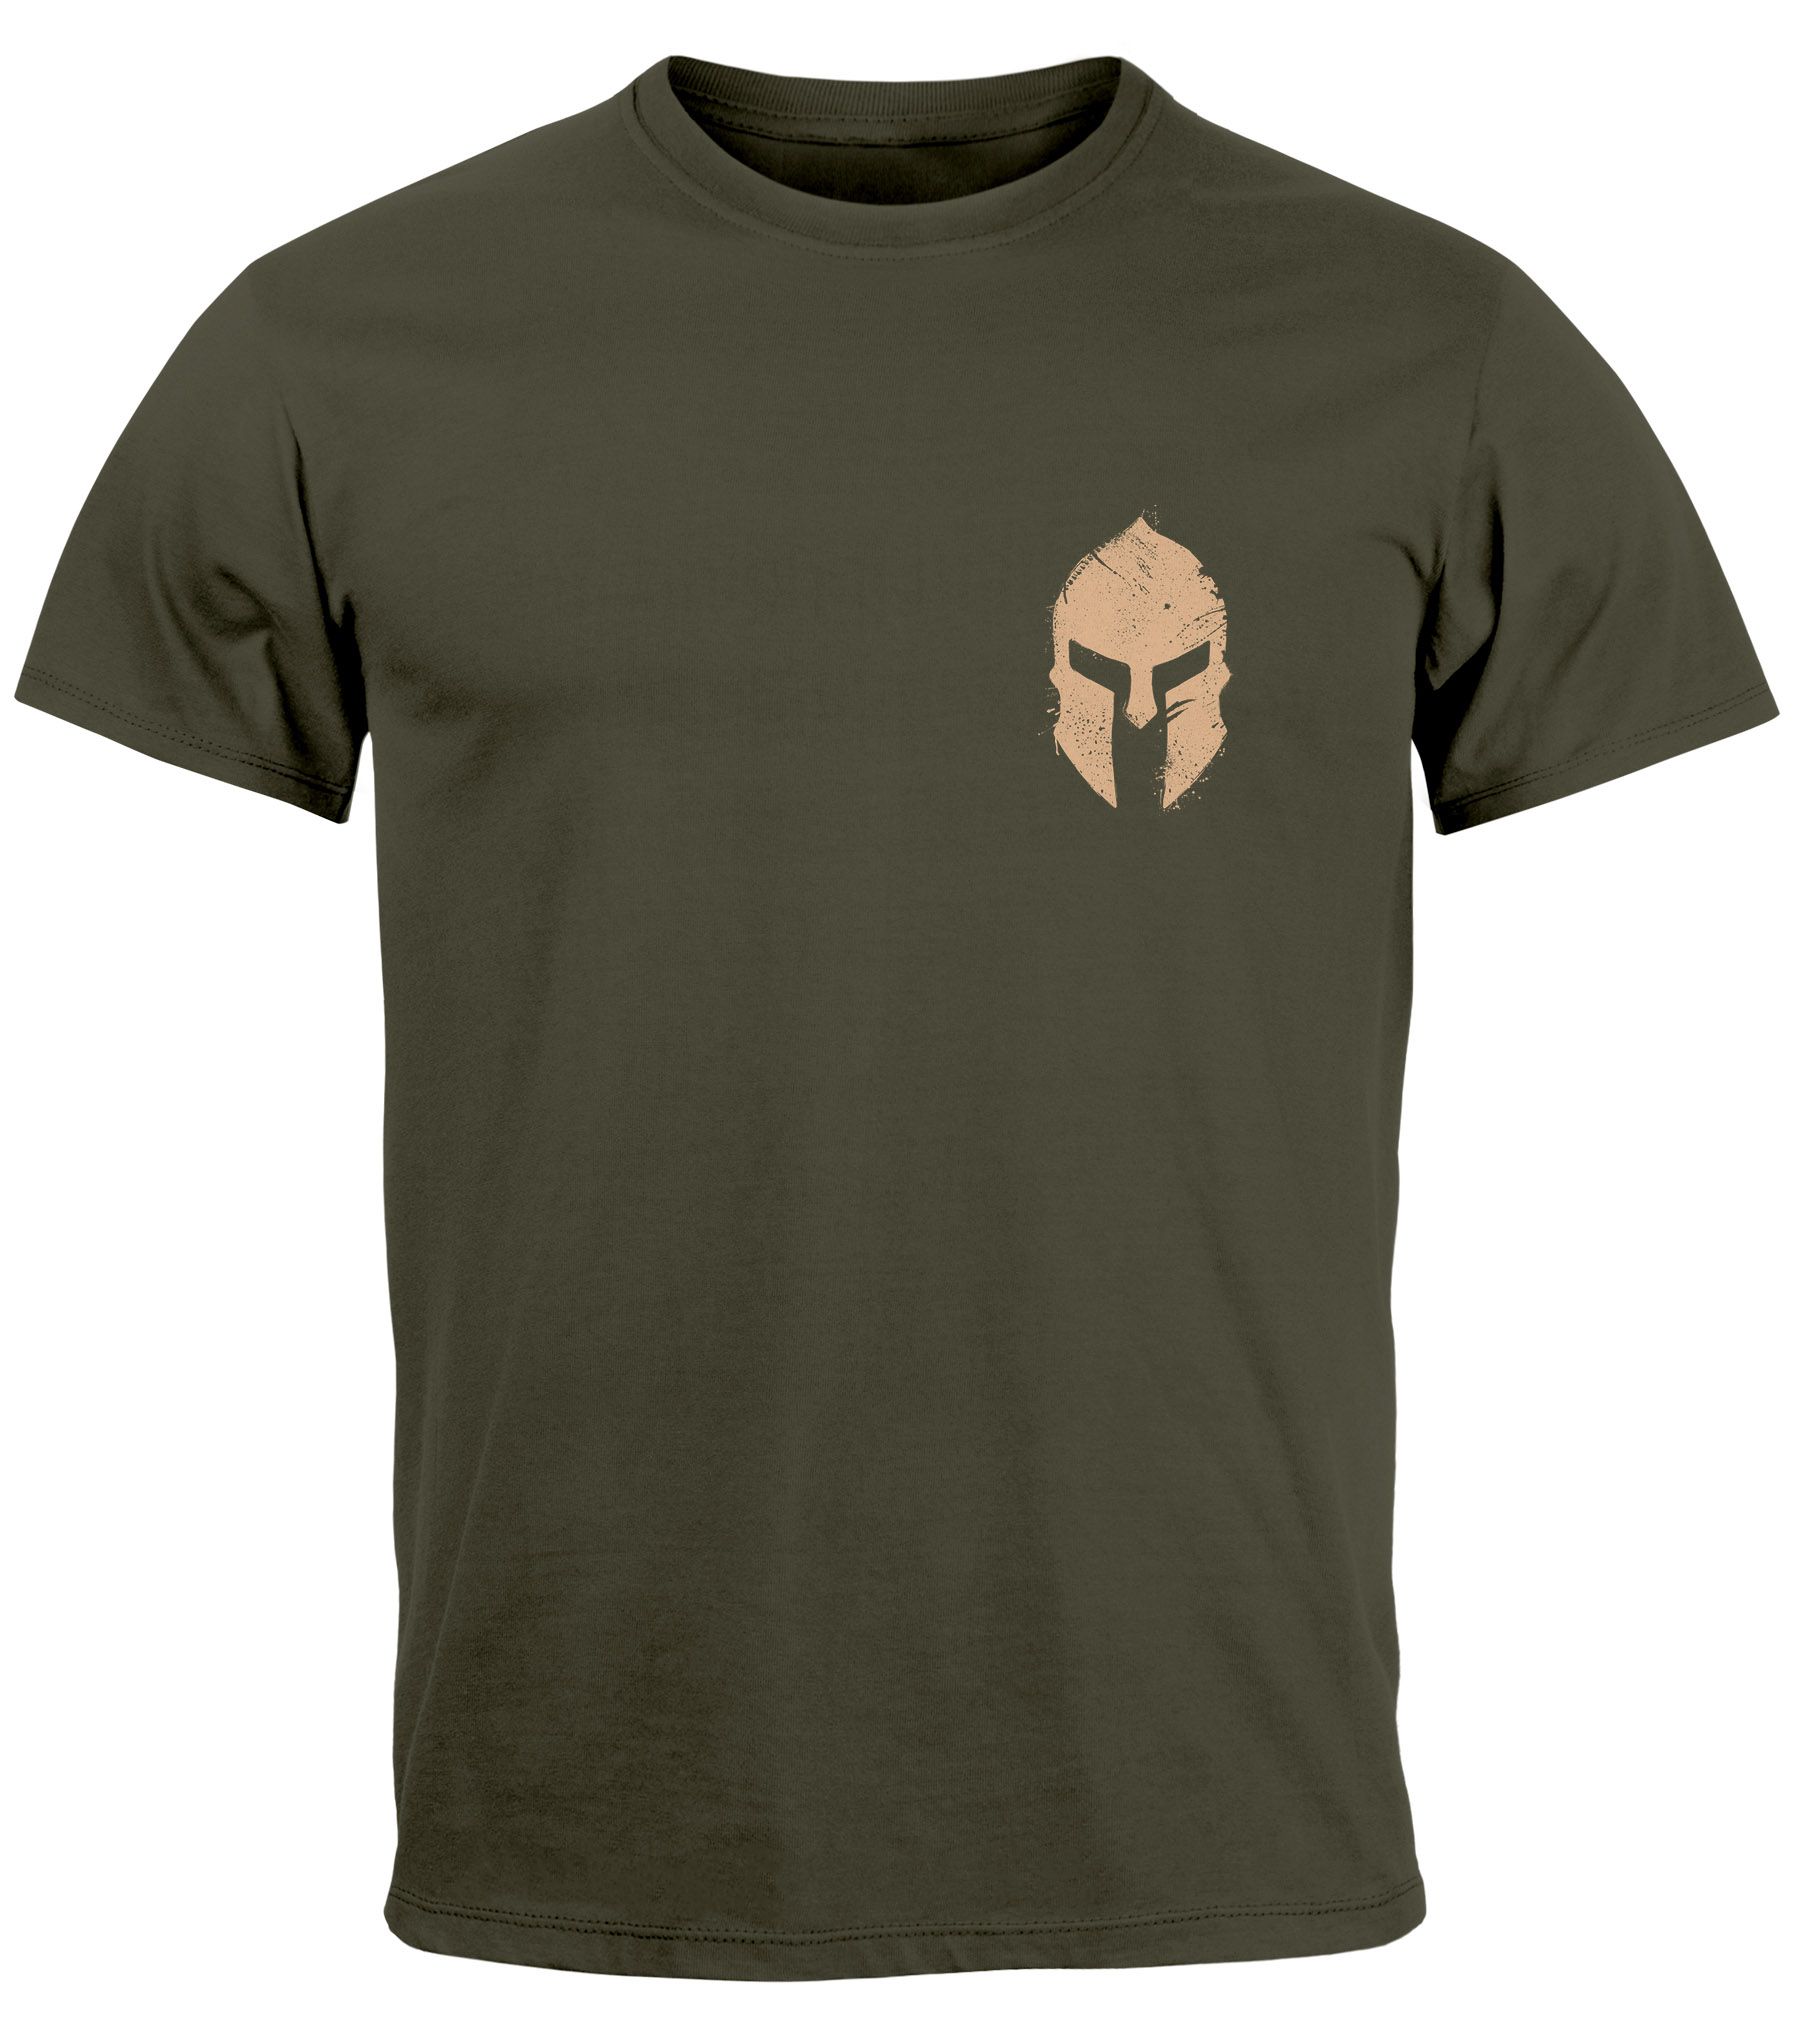 Herren T-Shirt Logo Print Sparta-Helm Spartaner Gladiator Krieger Warrior Fashion Streetstyle Neverless®